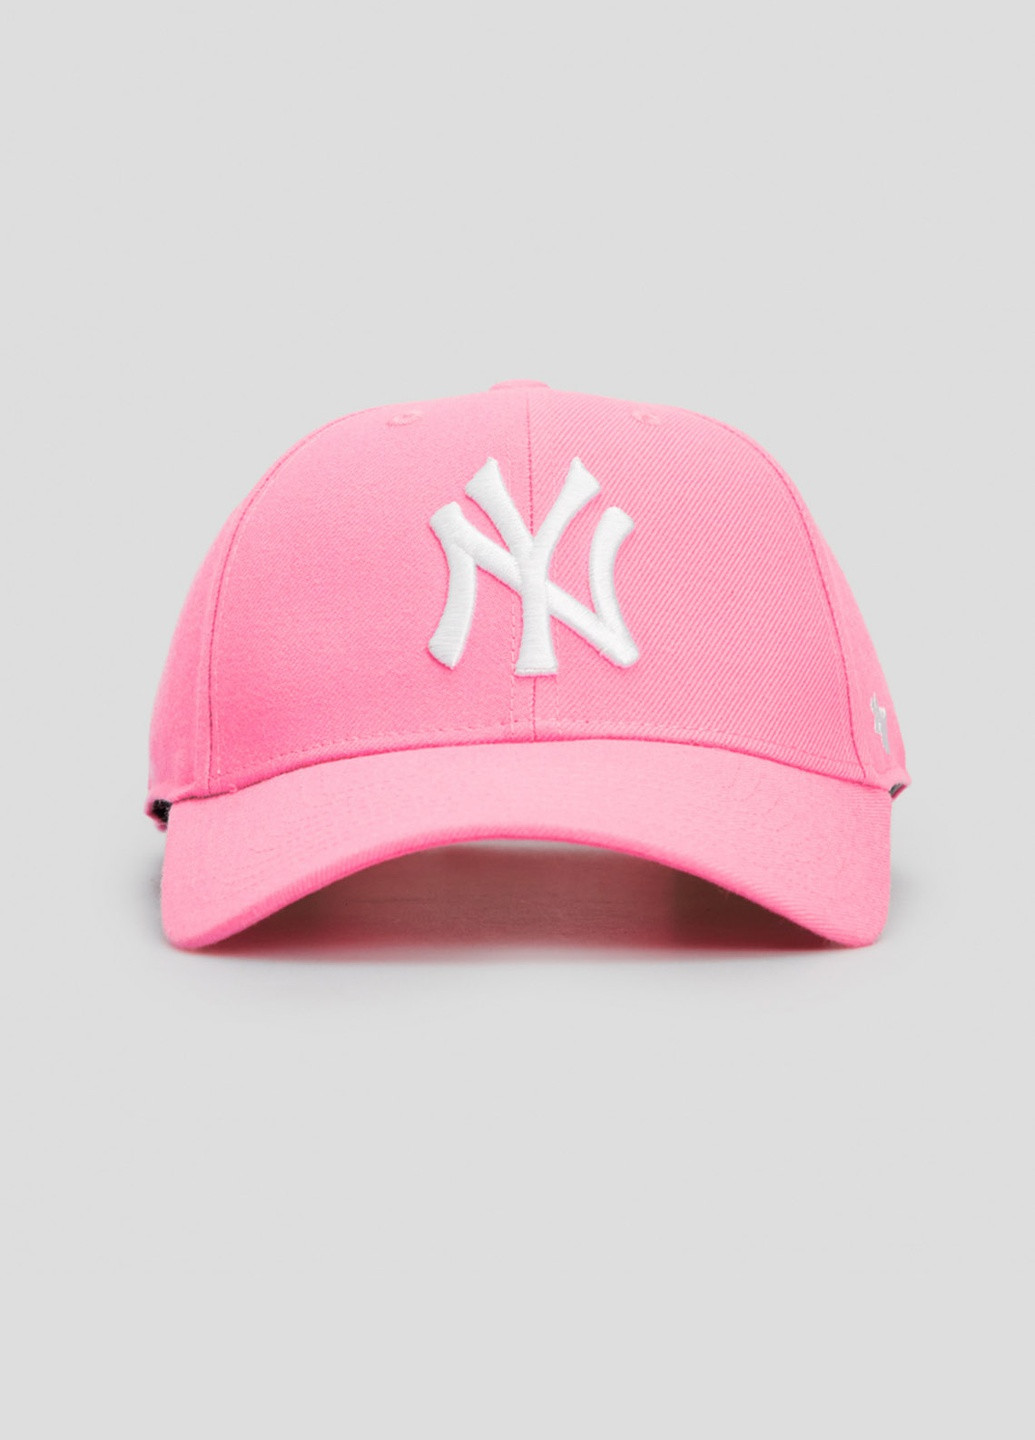 Розовая кепка с вышивкой Ny Yankees 47 Brand (253563780)